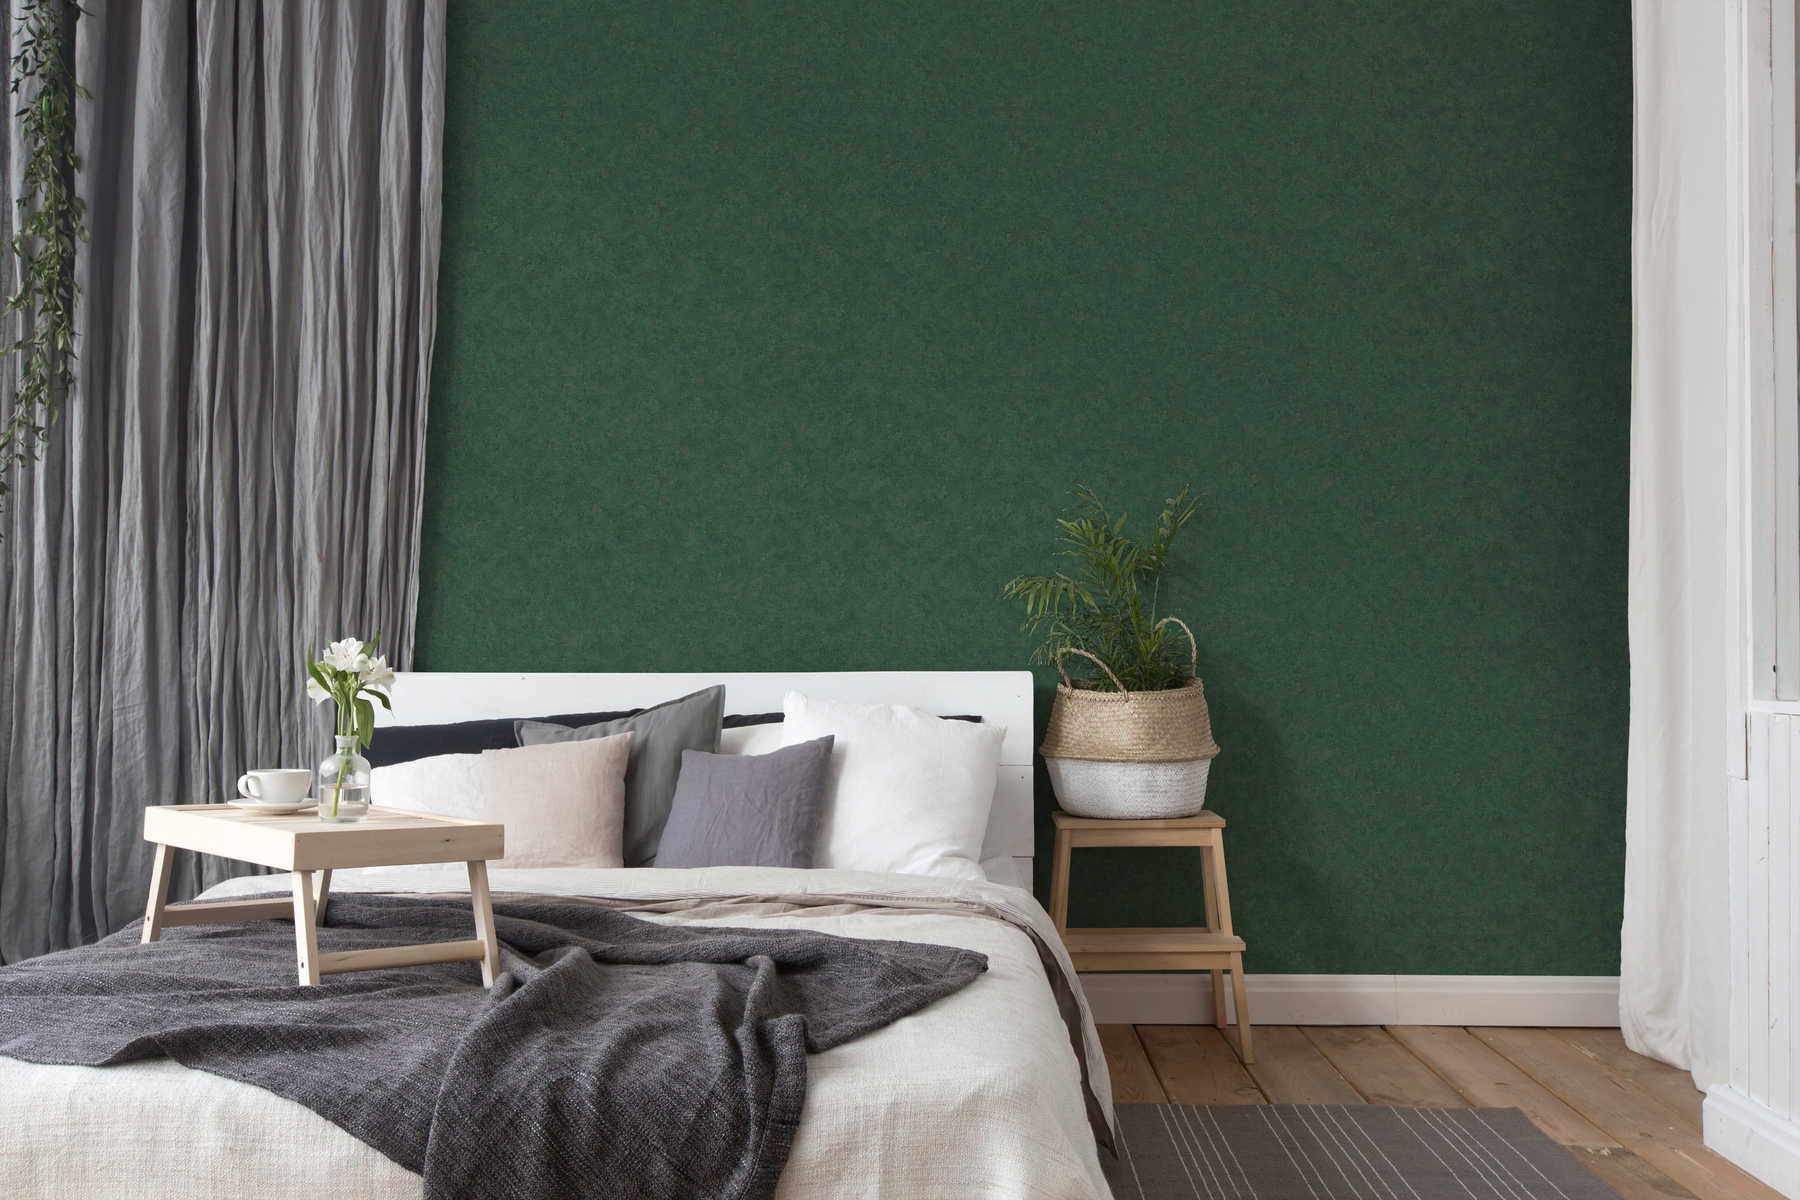             Papel pintado no tejido liso, patrón de colores y aspecto vintage - verde
        